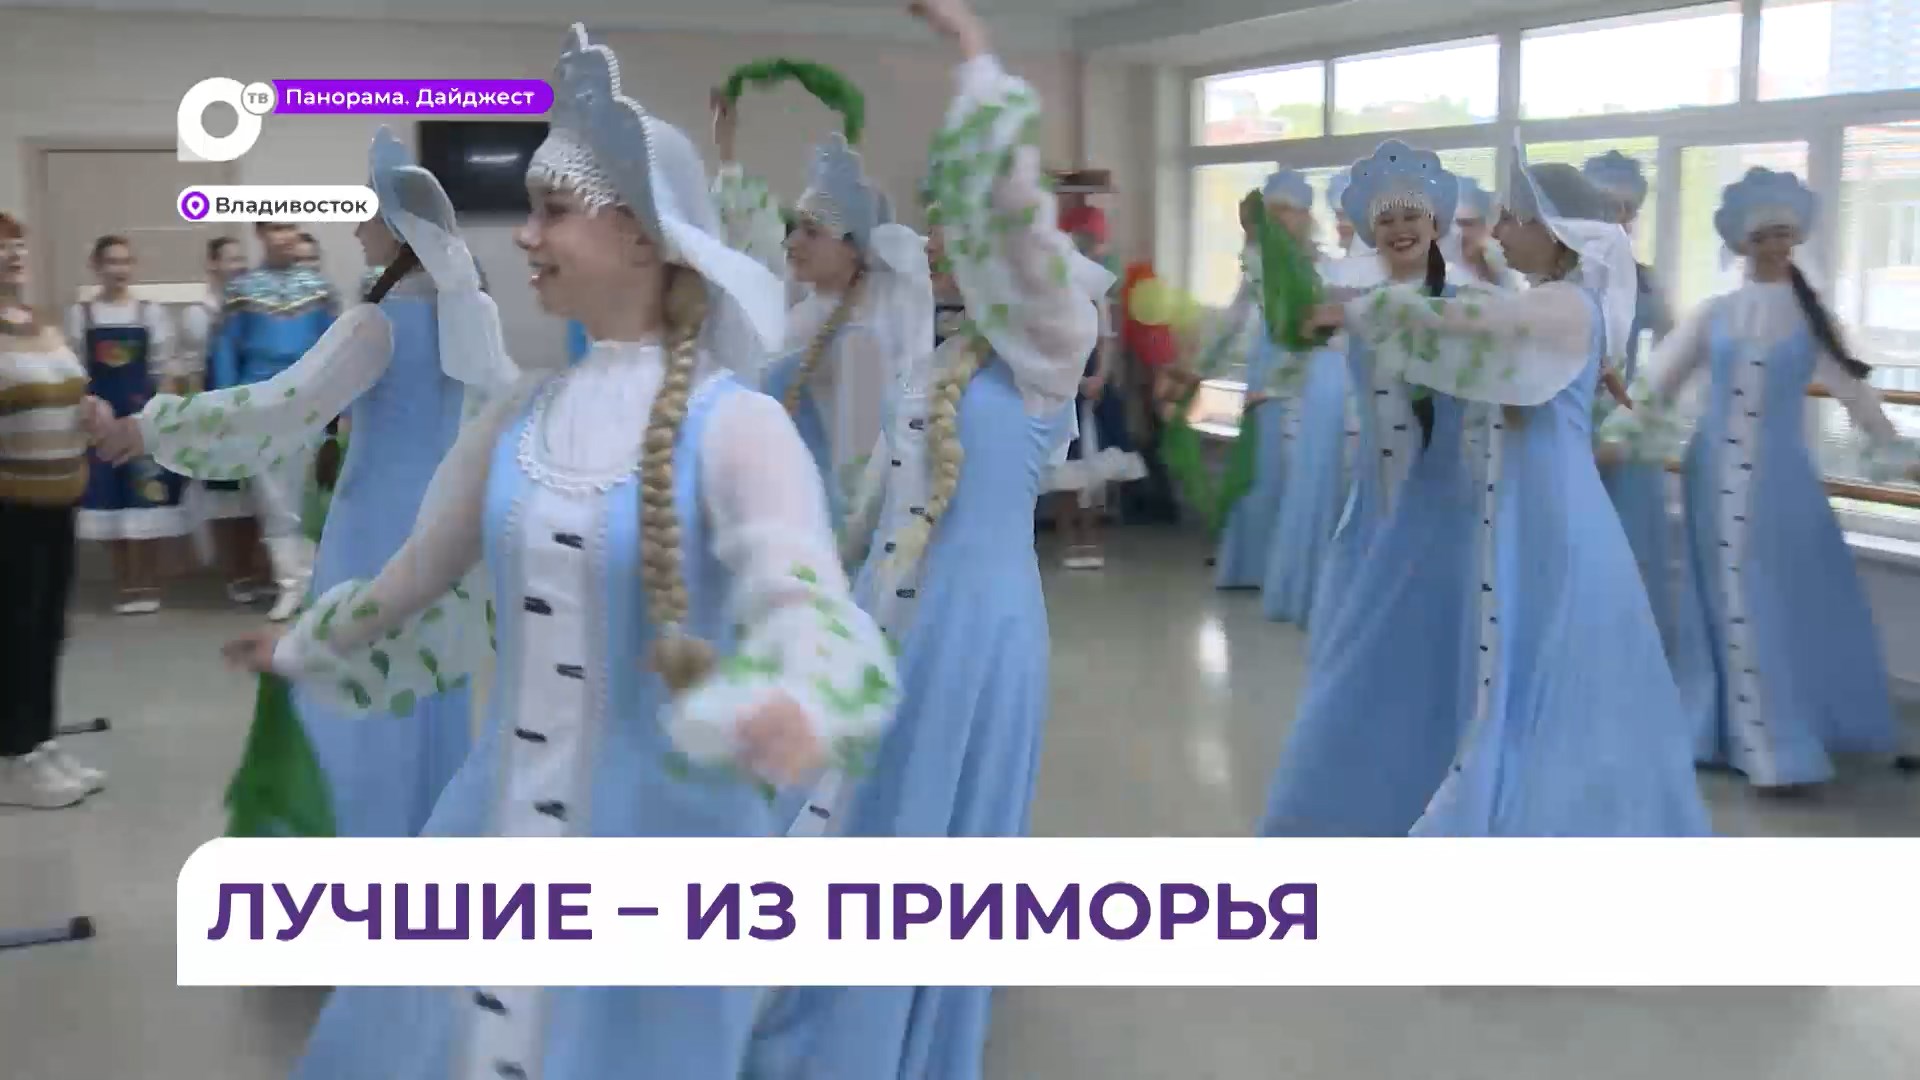 Приморский ансамбль «Плясунья» забрал награды в 12 номинациях на конкурсе в Минске